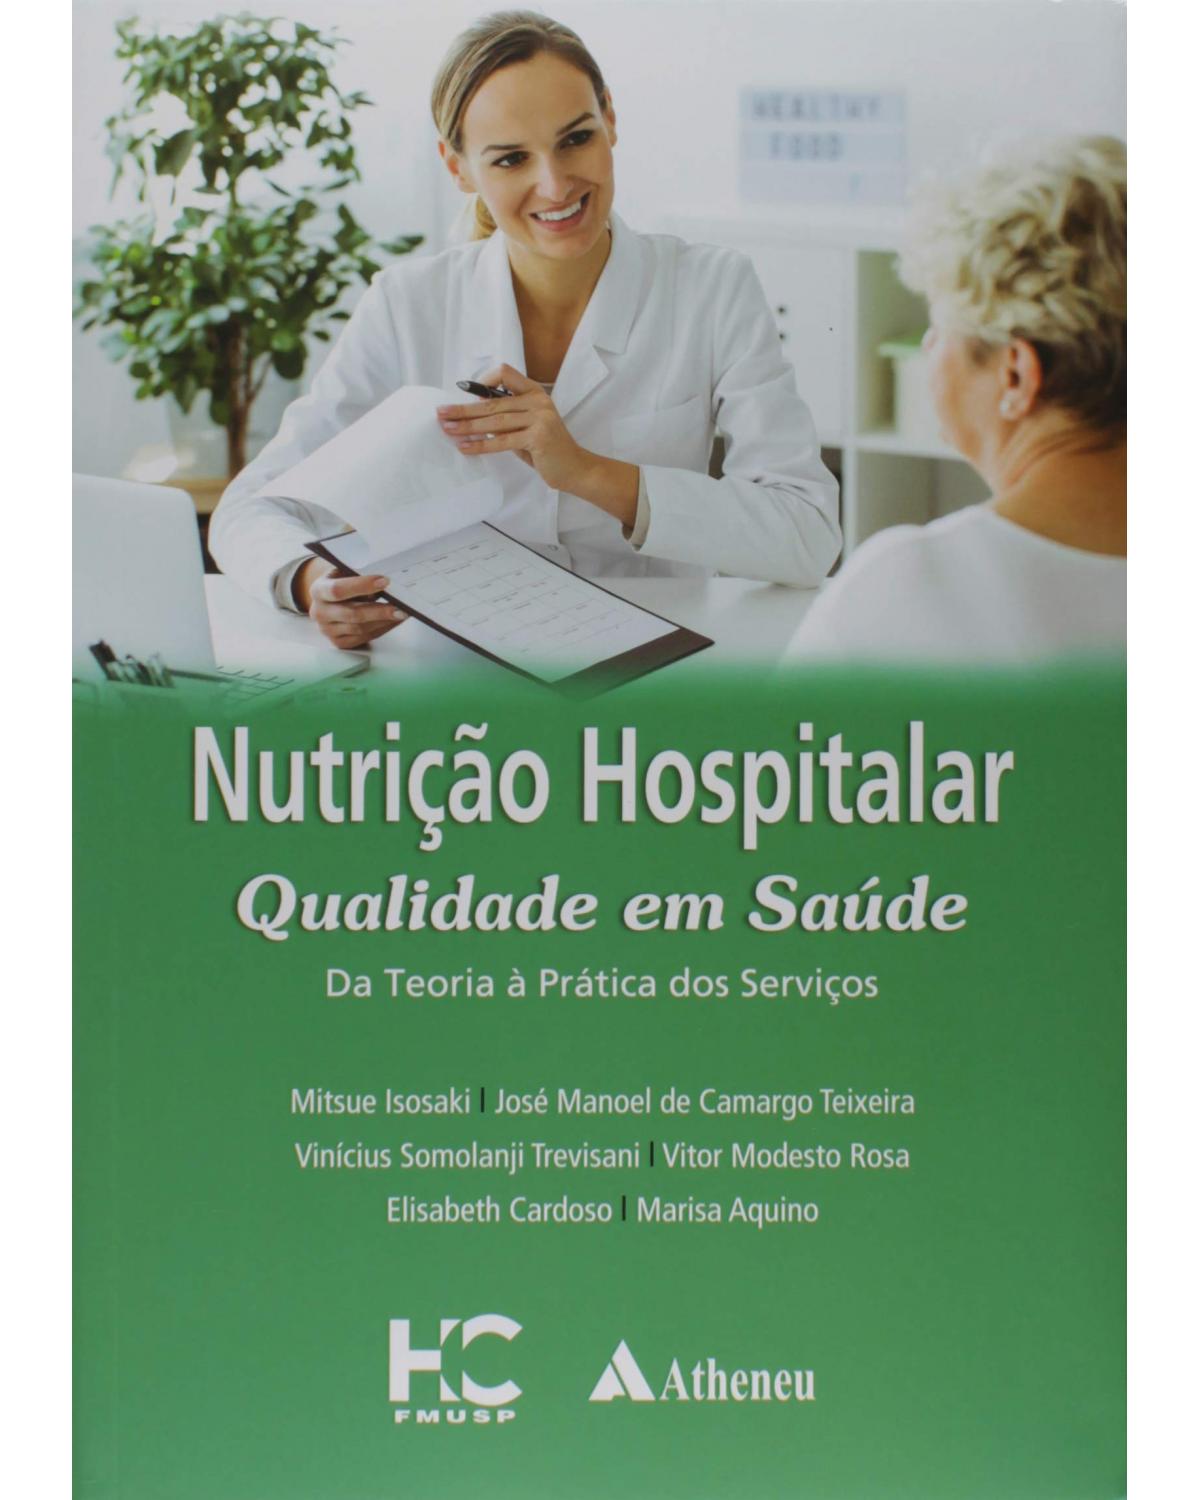 Nutrição hospitalar qualidade em saúde - da teoria à prática dos serviços - 1ª Edição | 2019